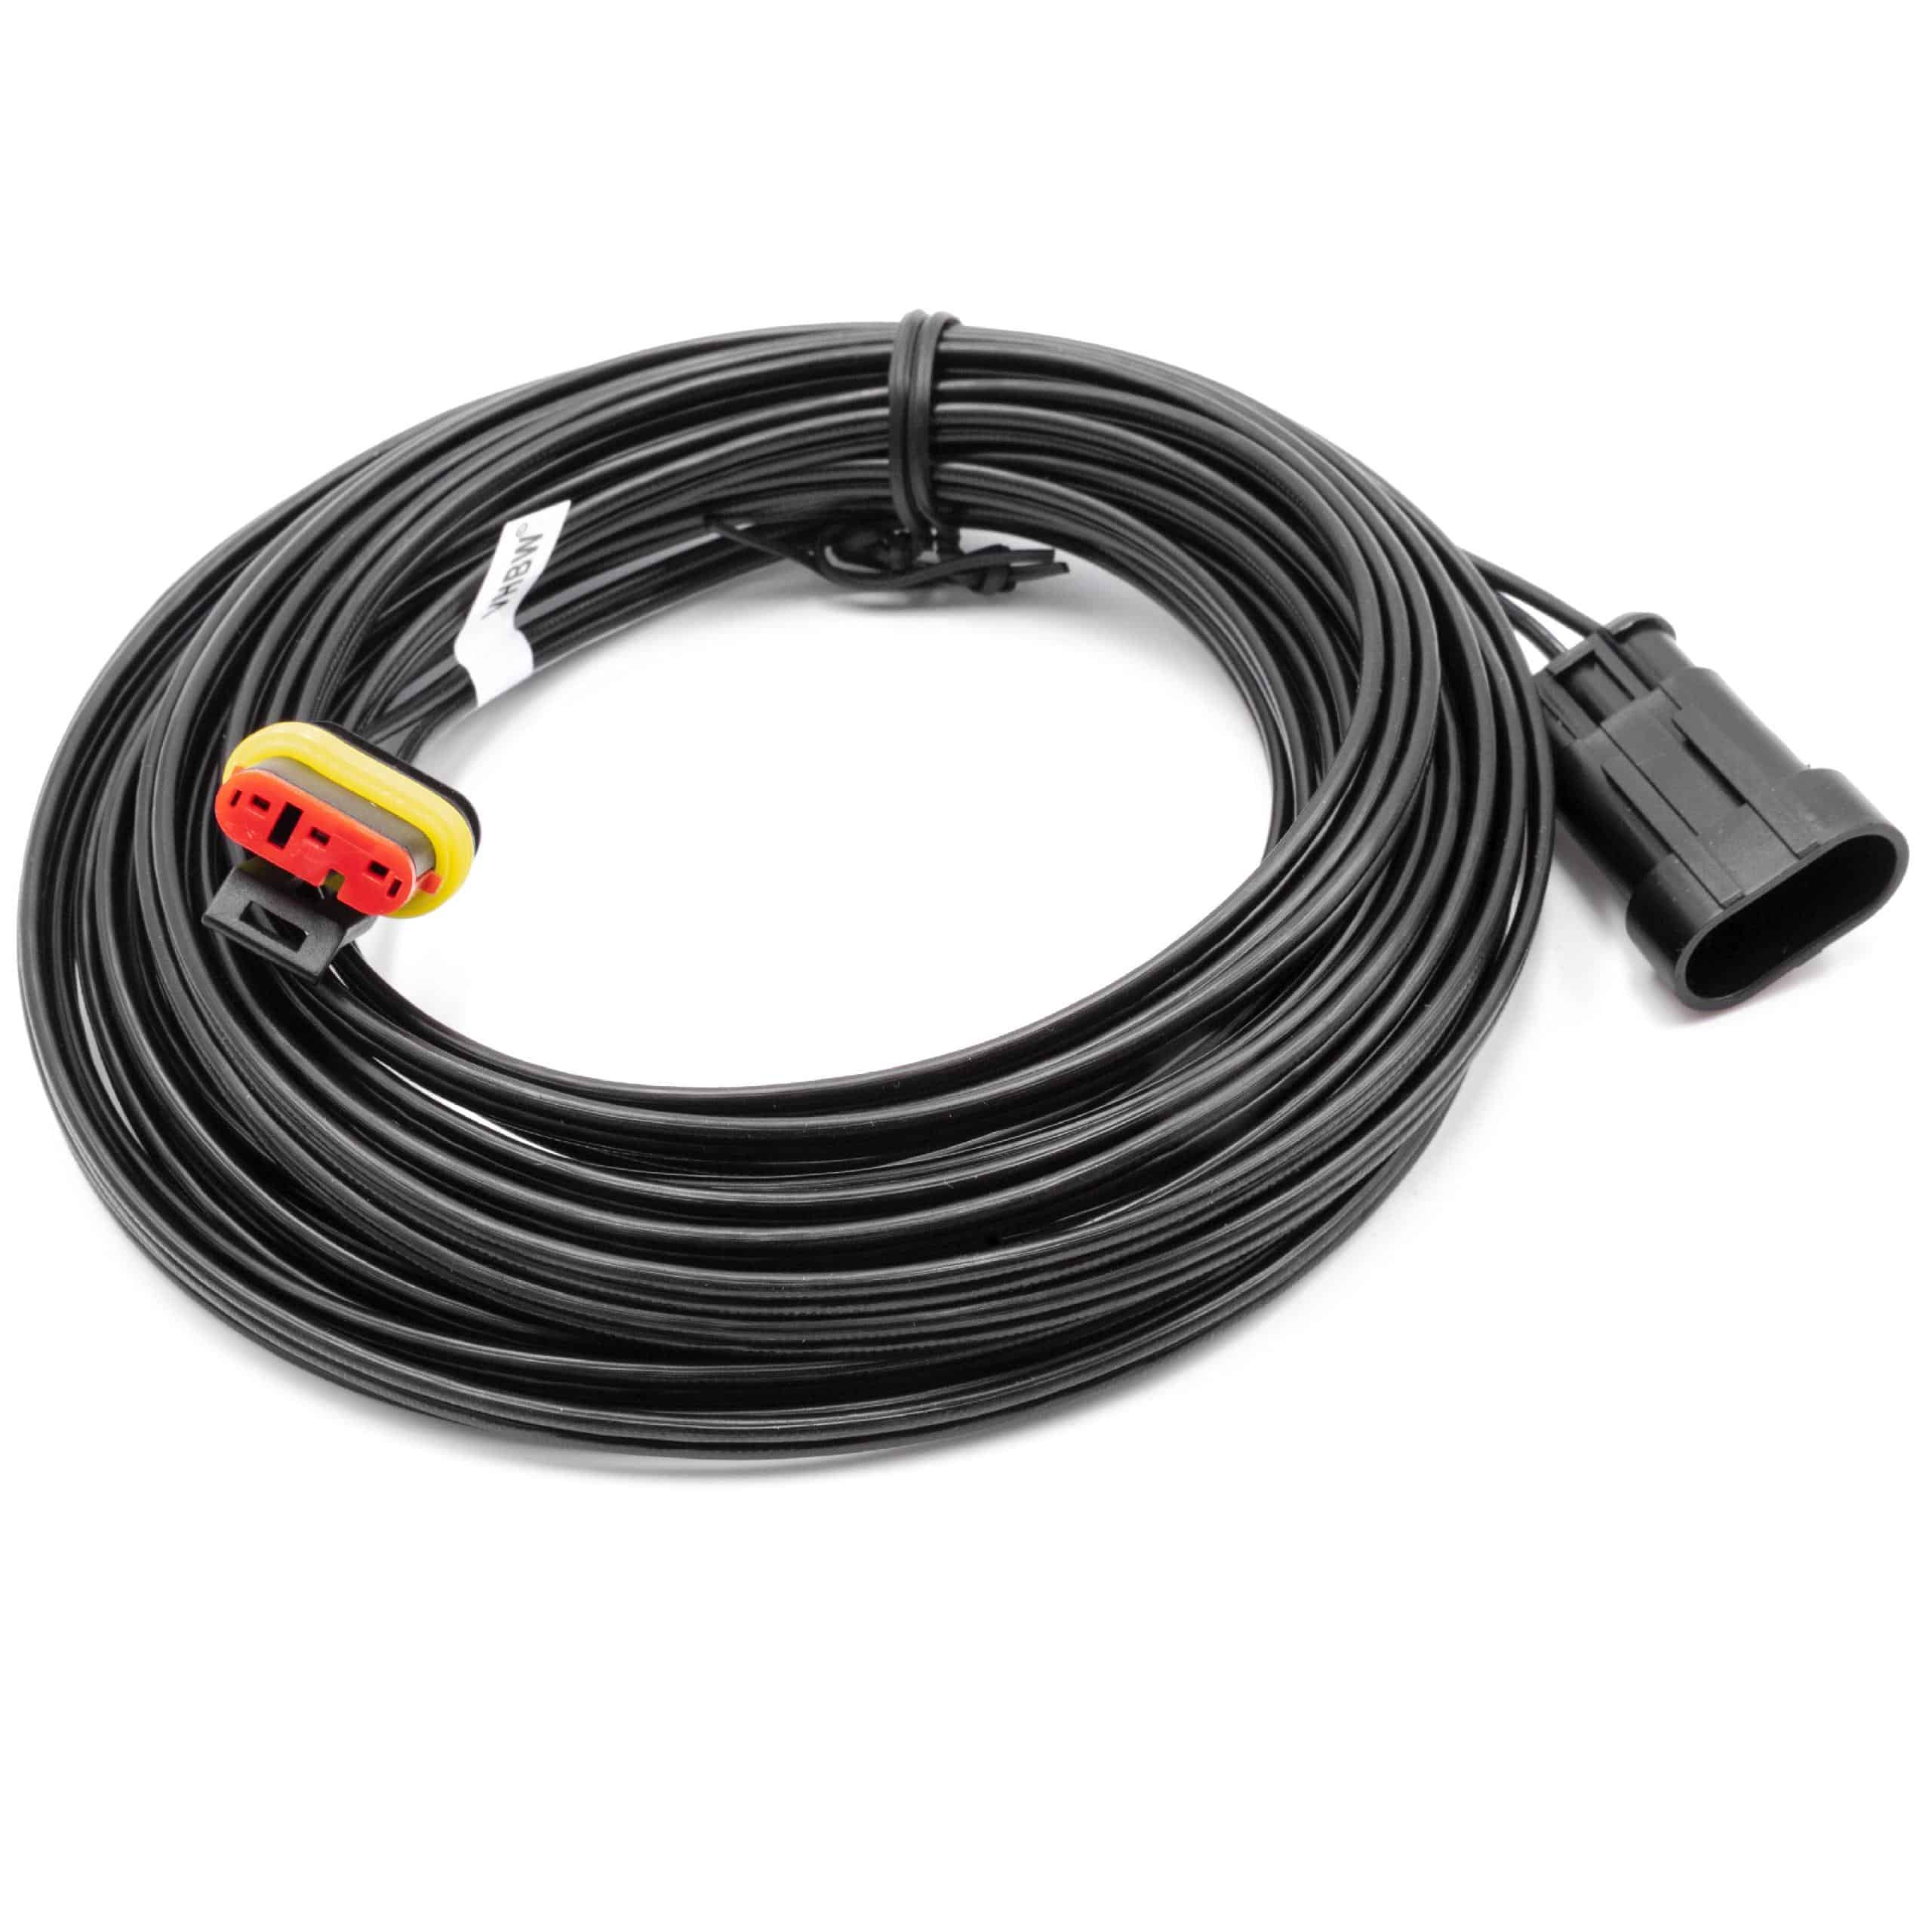 Câble de rechange pour Gardena 00057-98.251.01 pour robot tondeuse - Câble basse tension, 10 m